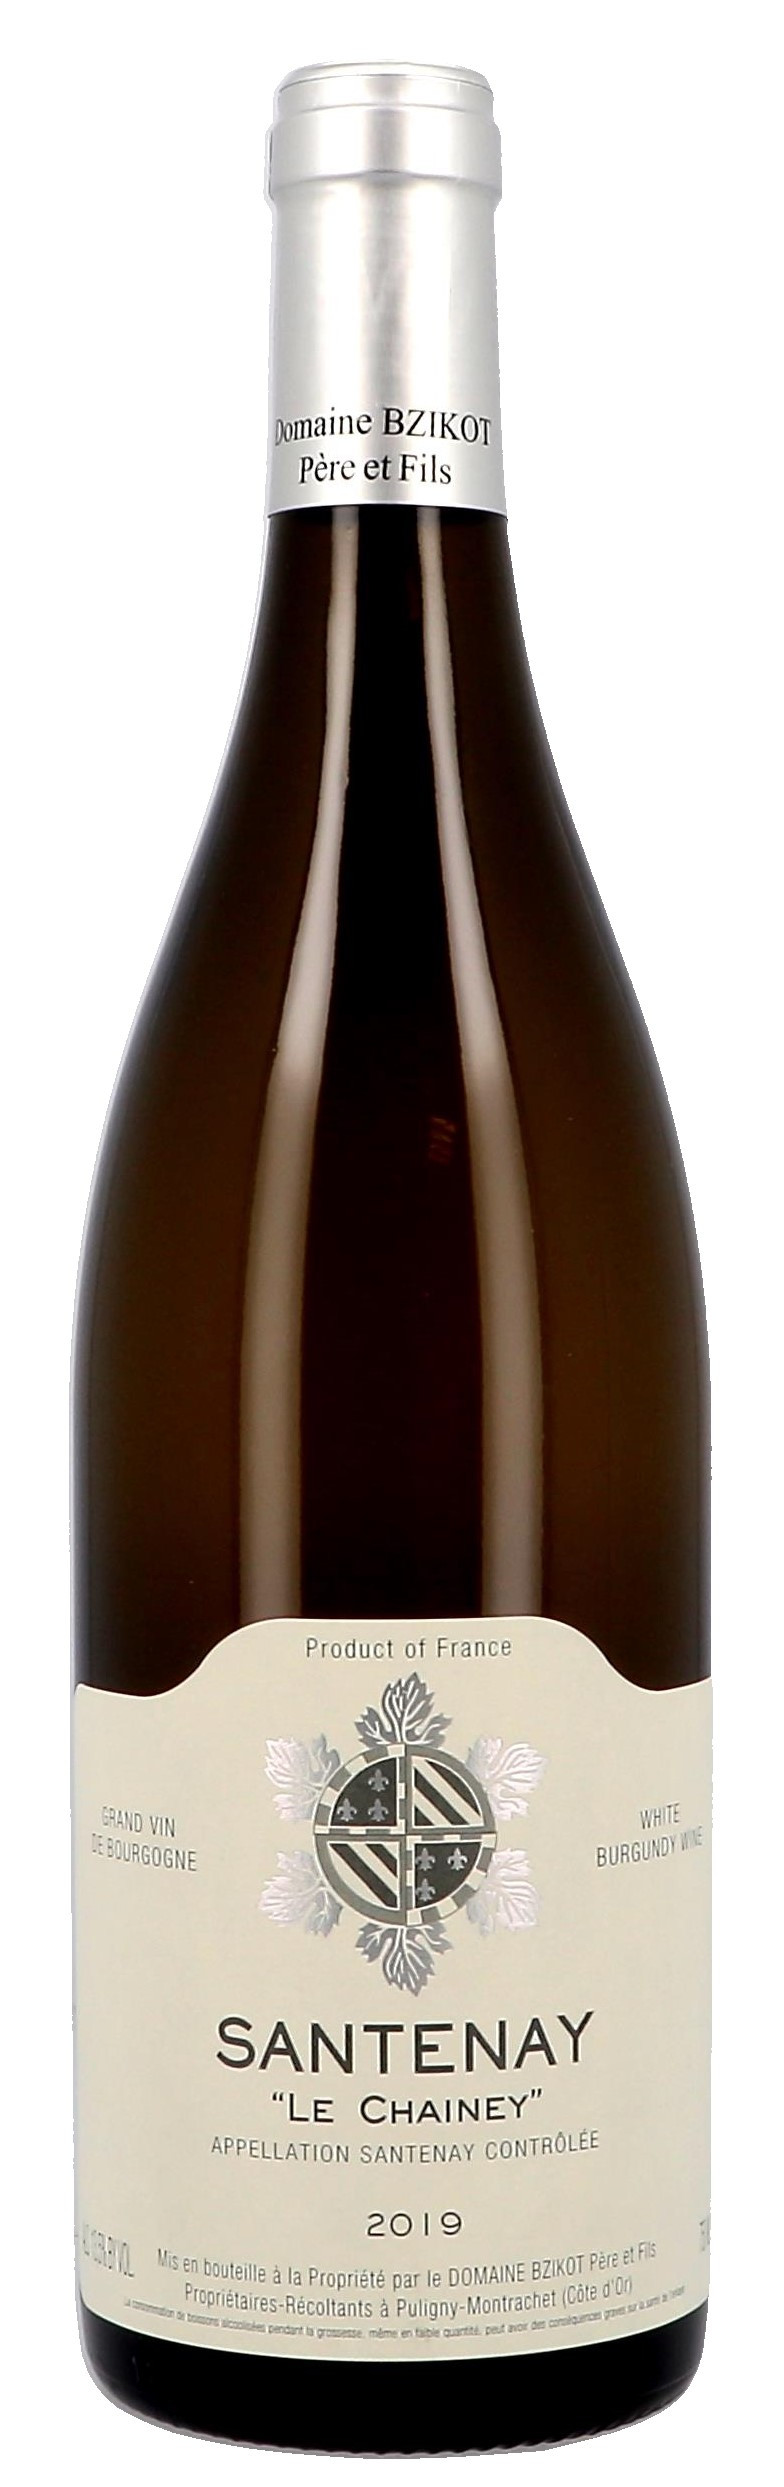 Santenay blanc Le Chainey 75cl 2019 Domaine Sylvain Bzikot - Vin